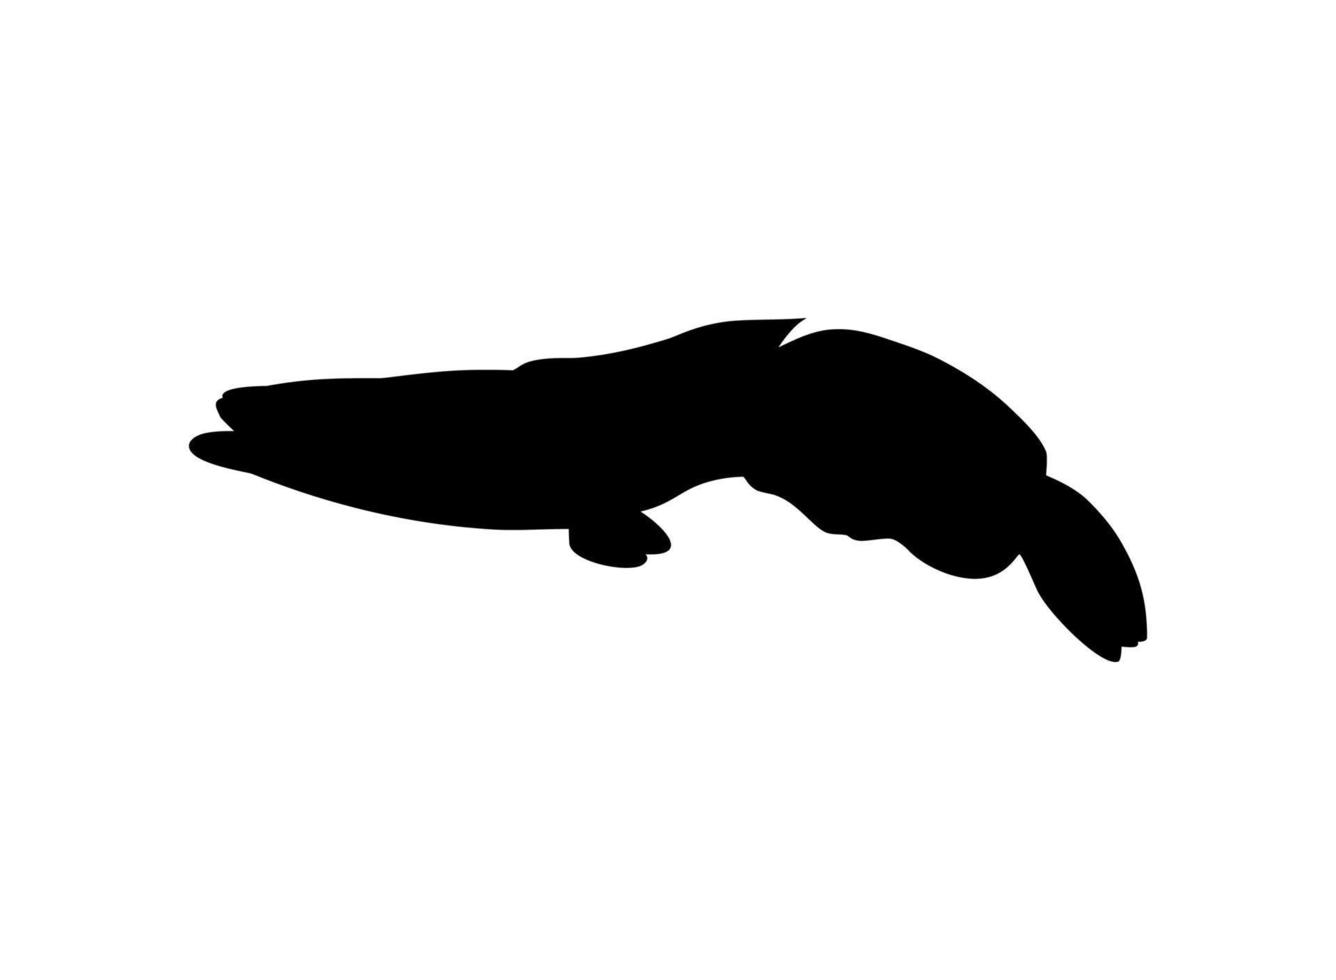 serpente testa pesce, d'acqua dolce perciform pesce famiglia cannidi, silhouette per logo, pittogramma o grafico design elemento. vettore illustrazione